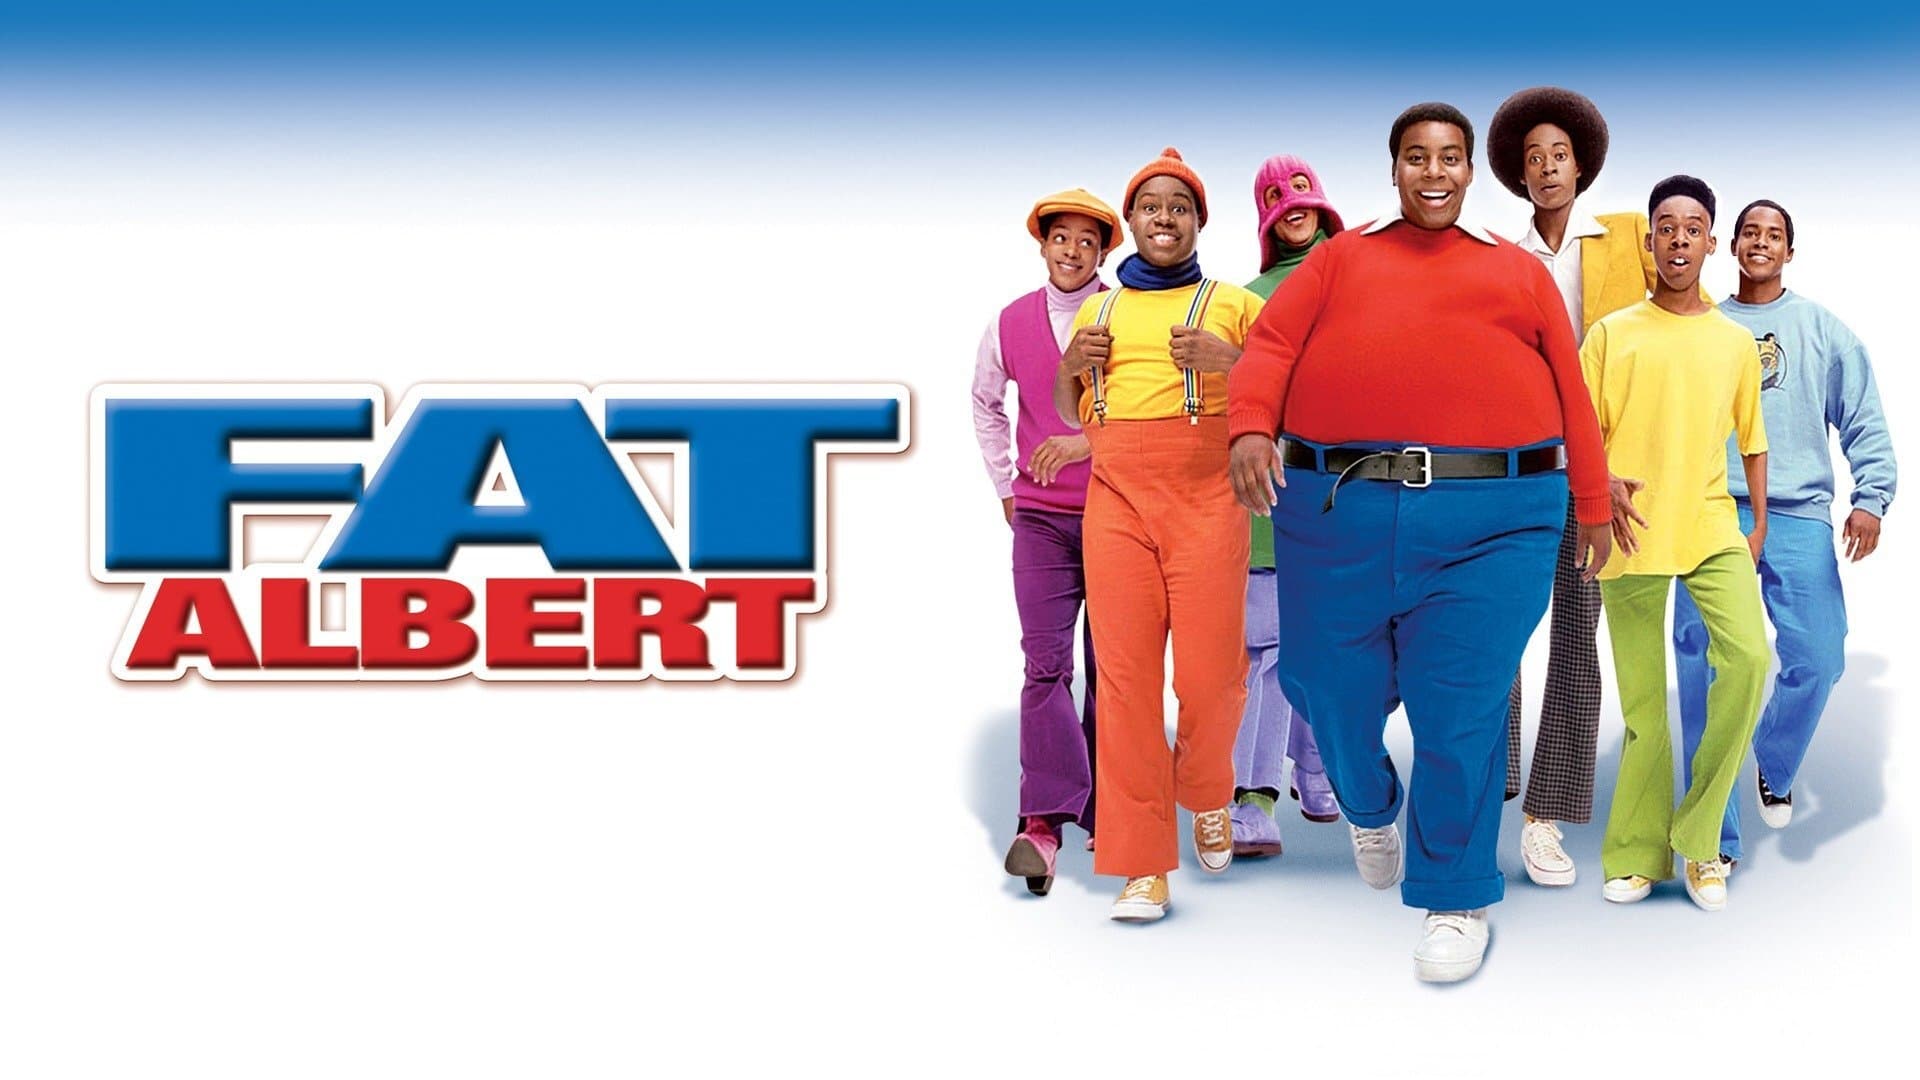 Fat Albert (2004)